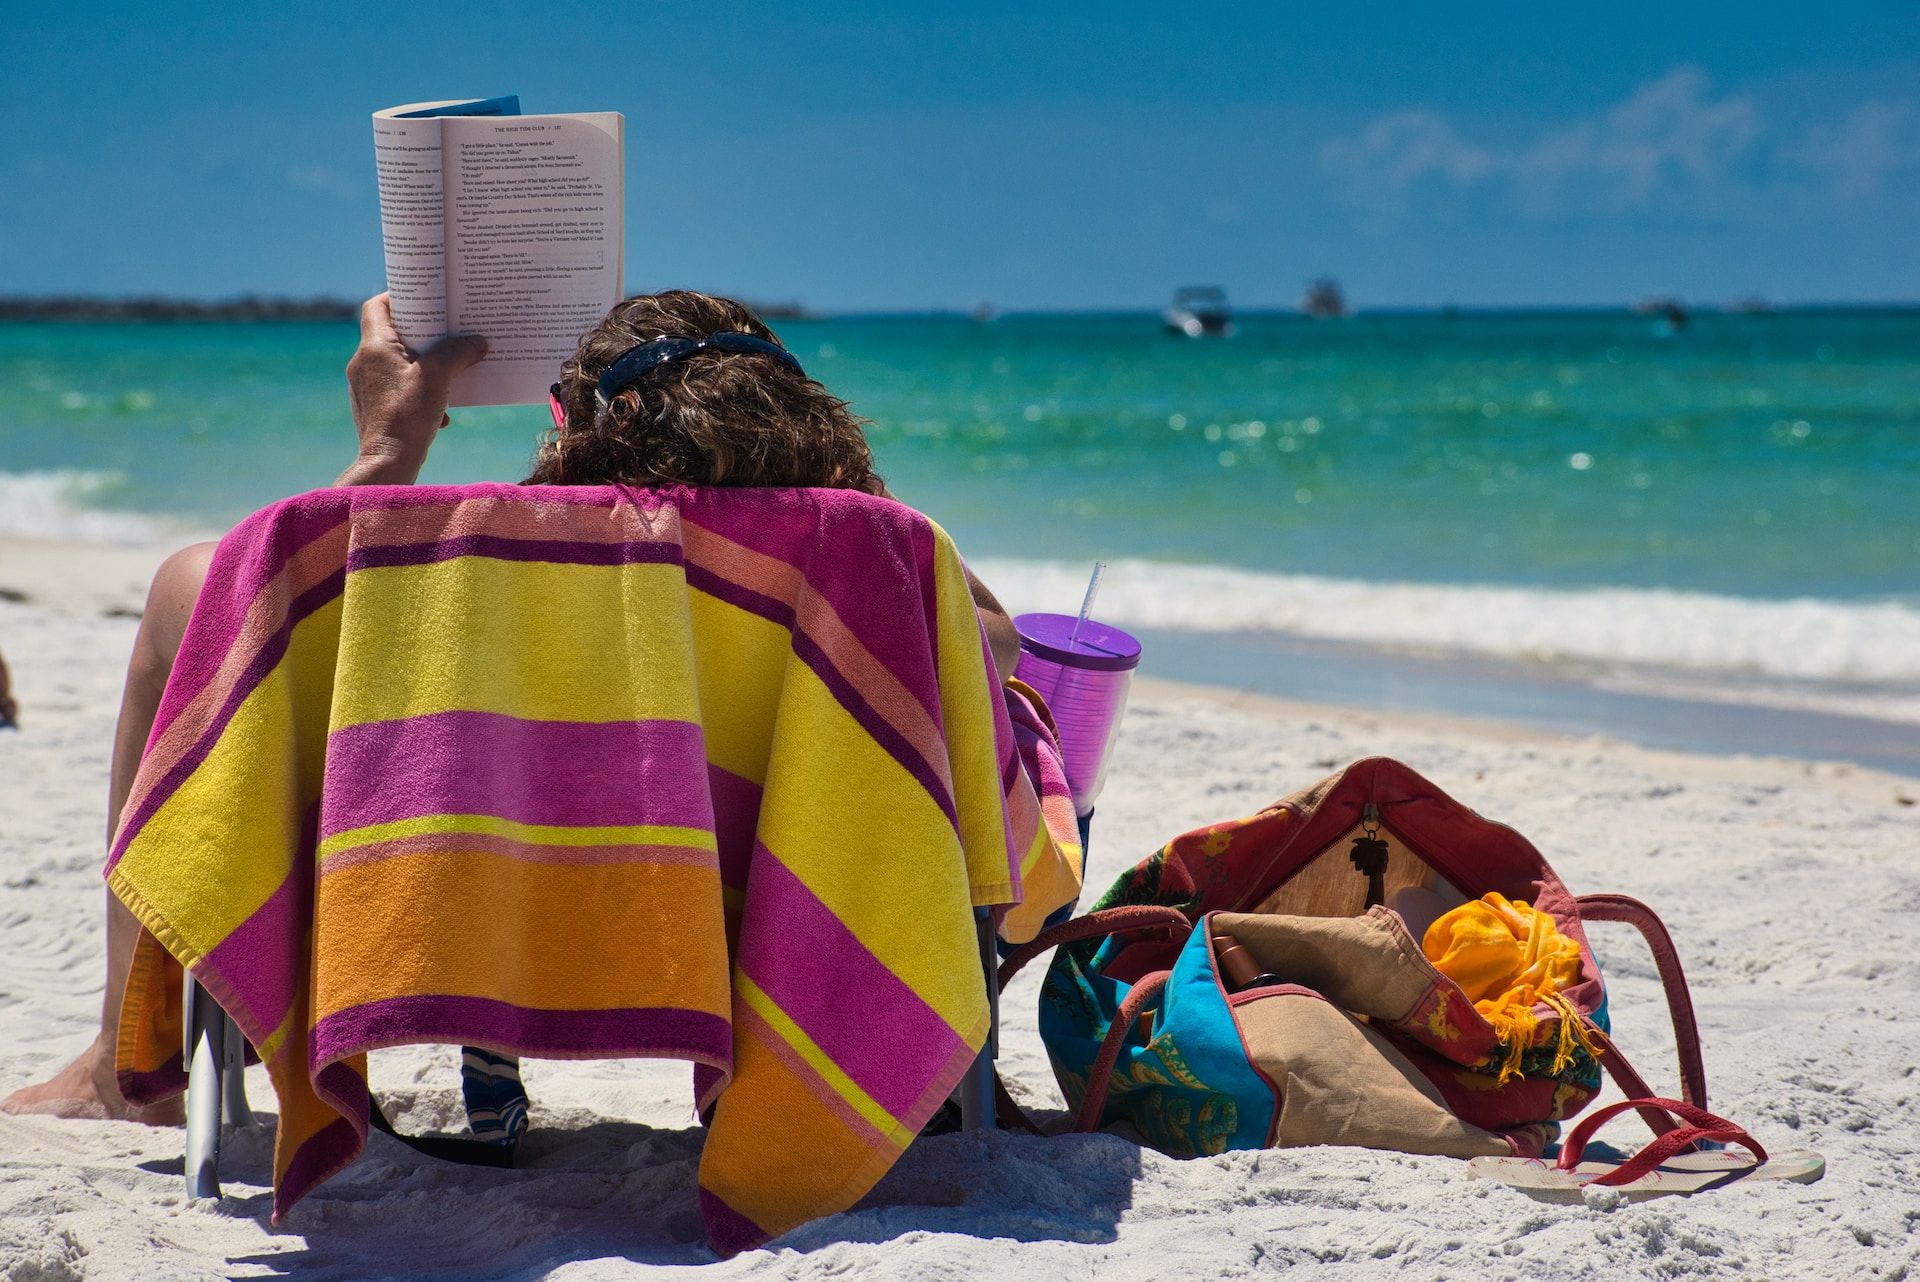 I libri da leggere in vacanza: i migliori romanzi, racconti e saggi da mettere in valigia - immagine 2